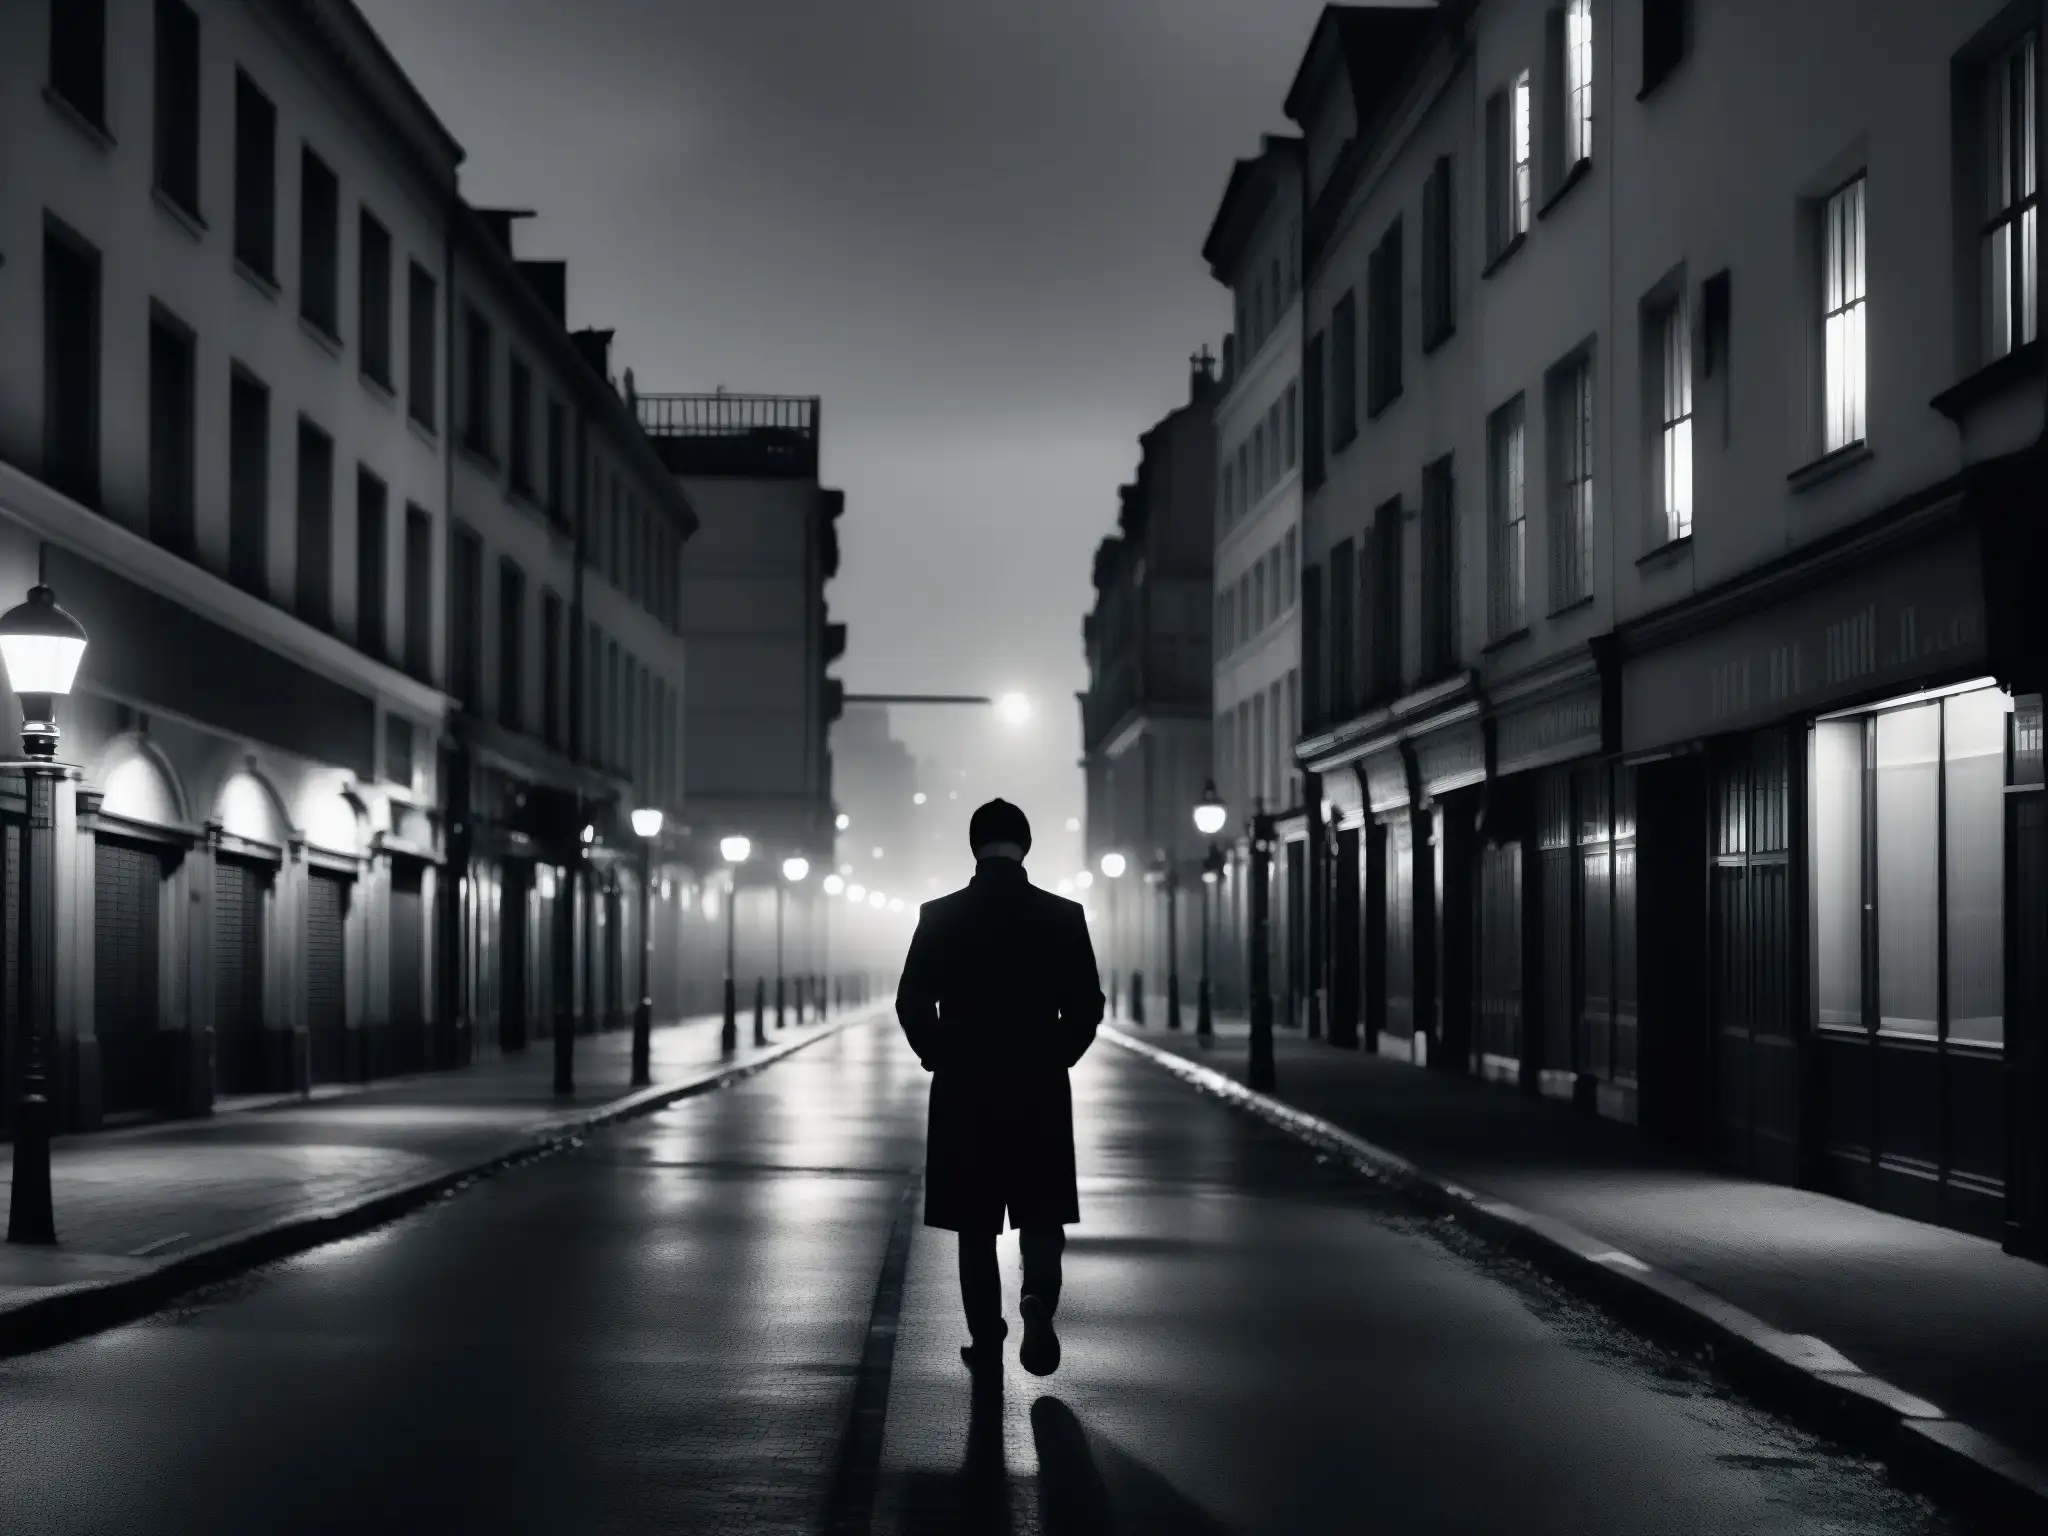 Una imagen en blanco y negro muestra las desoladas calles de una ciudad durante la pandemia, evocando leyendas urbanas, miedo y aislamiento